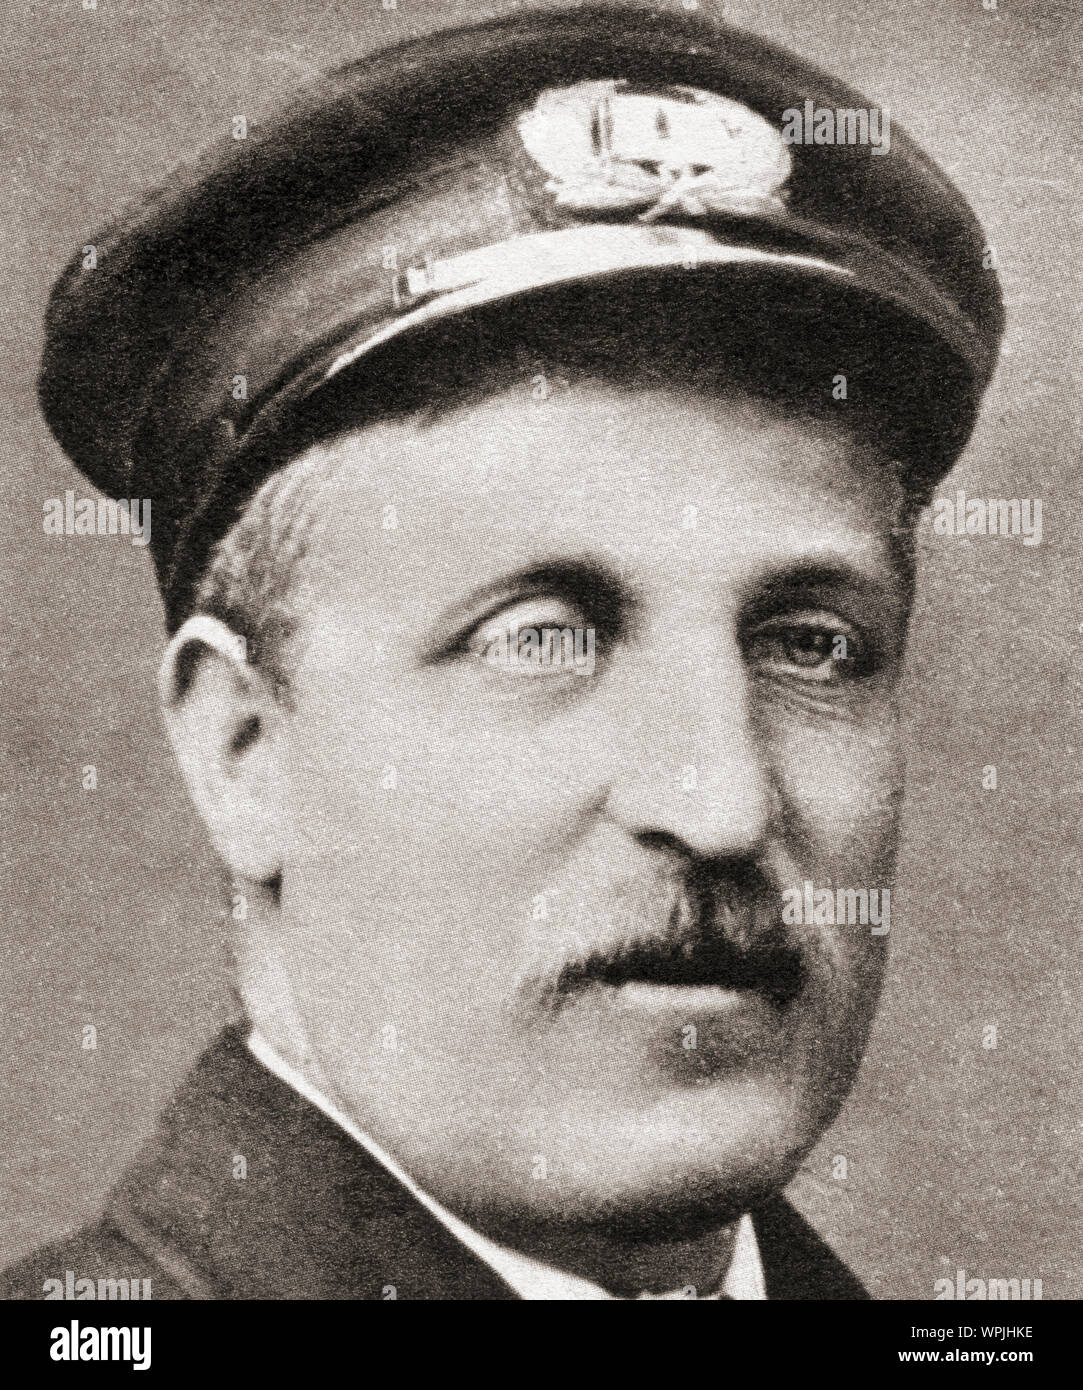 M. Théodore, Fryatt 1872 - 1916. Mariner britannique exécutée par les Allemands pour tenter de forcer un U-boot en 1915. À partir de la cérémonie du siècle, publié en 1934. Banque D'Images